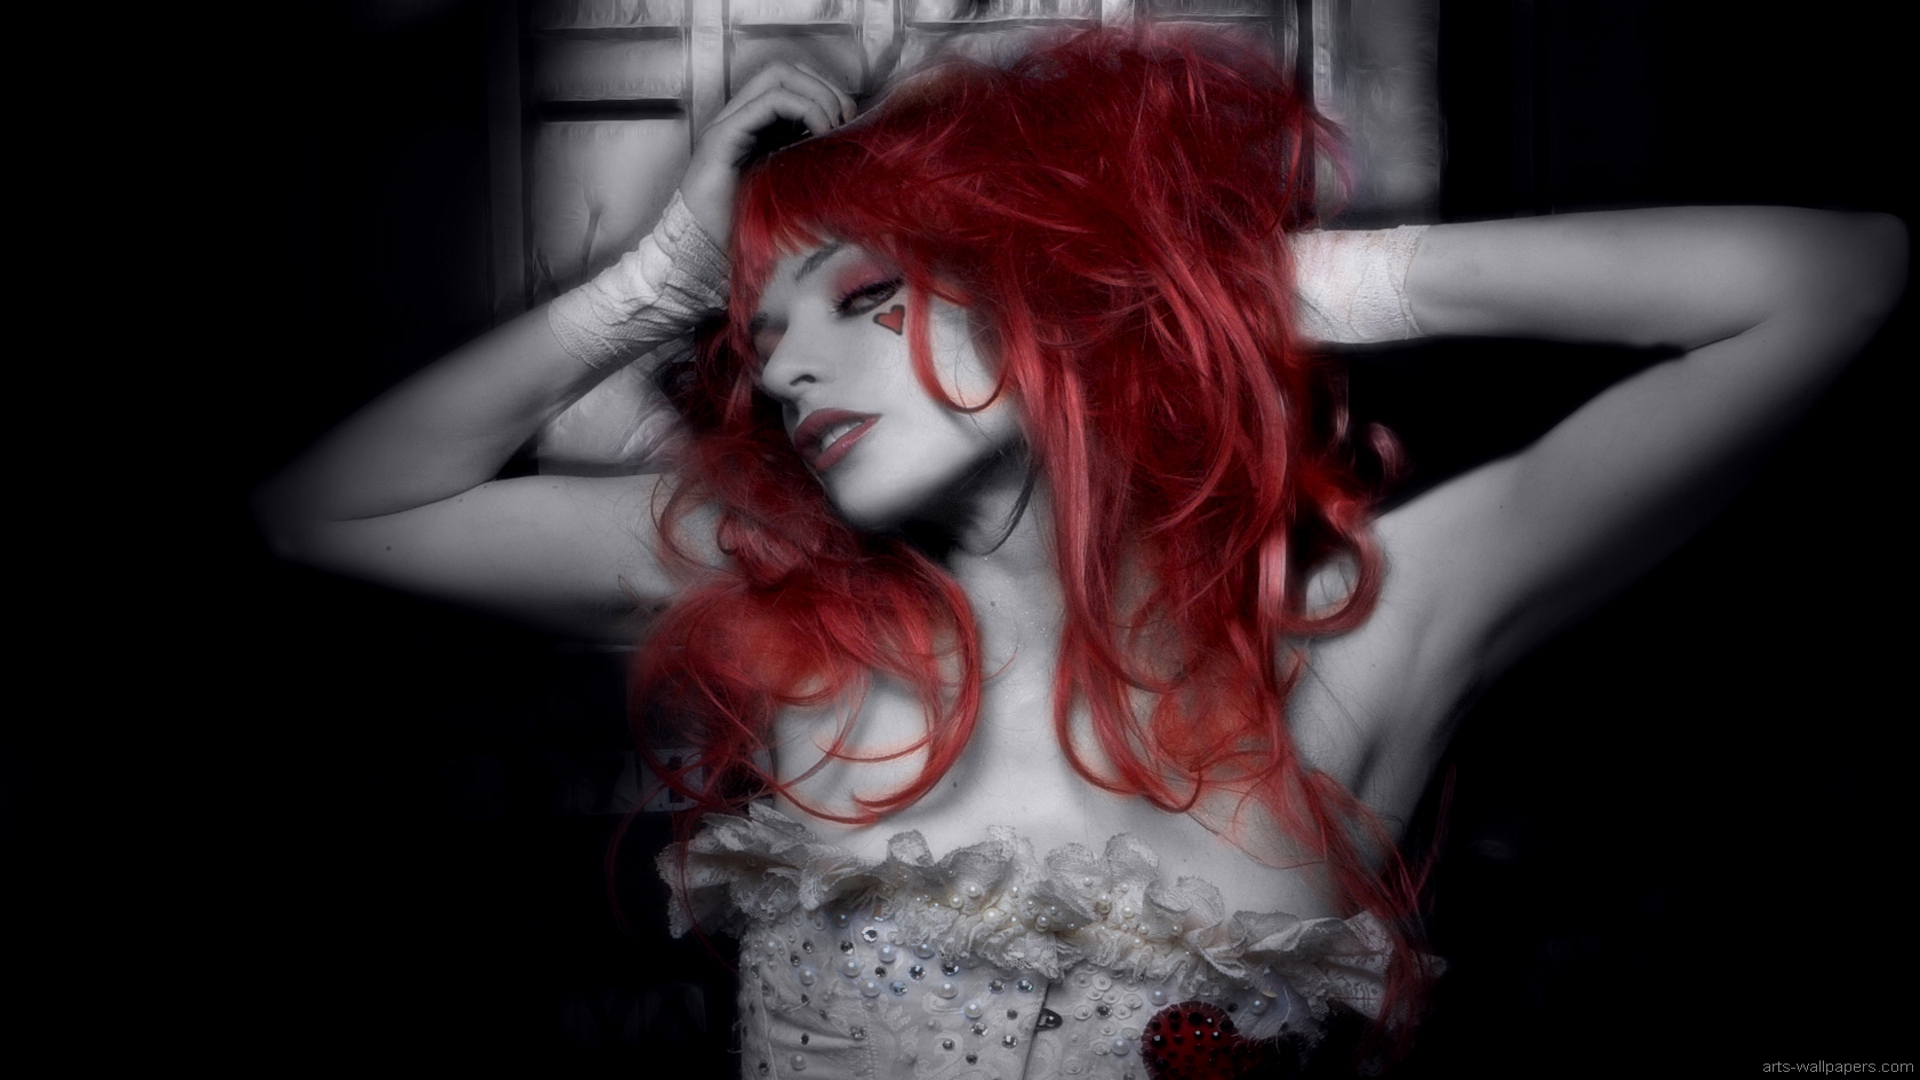 Emilie Autumn Liddell music singer songwriter poet 1920x1080